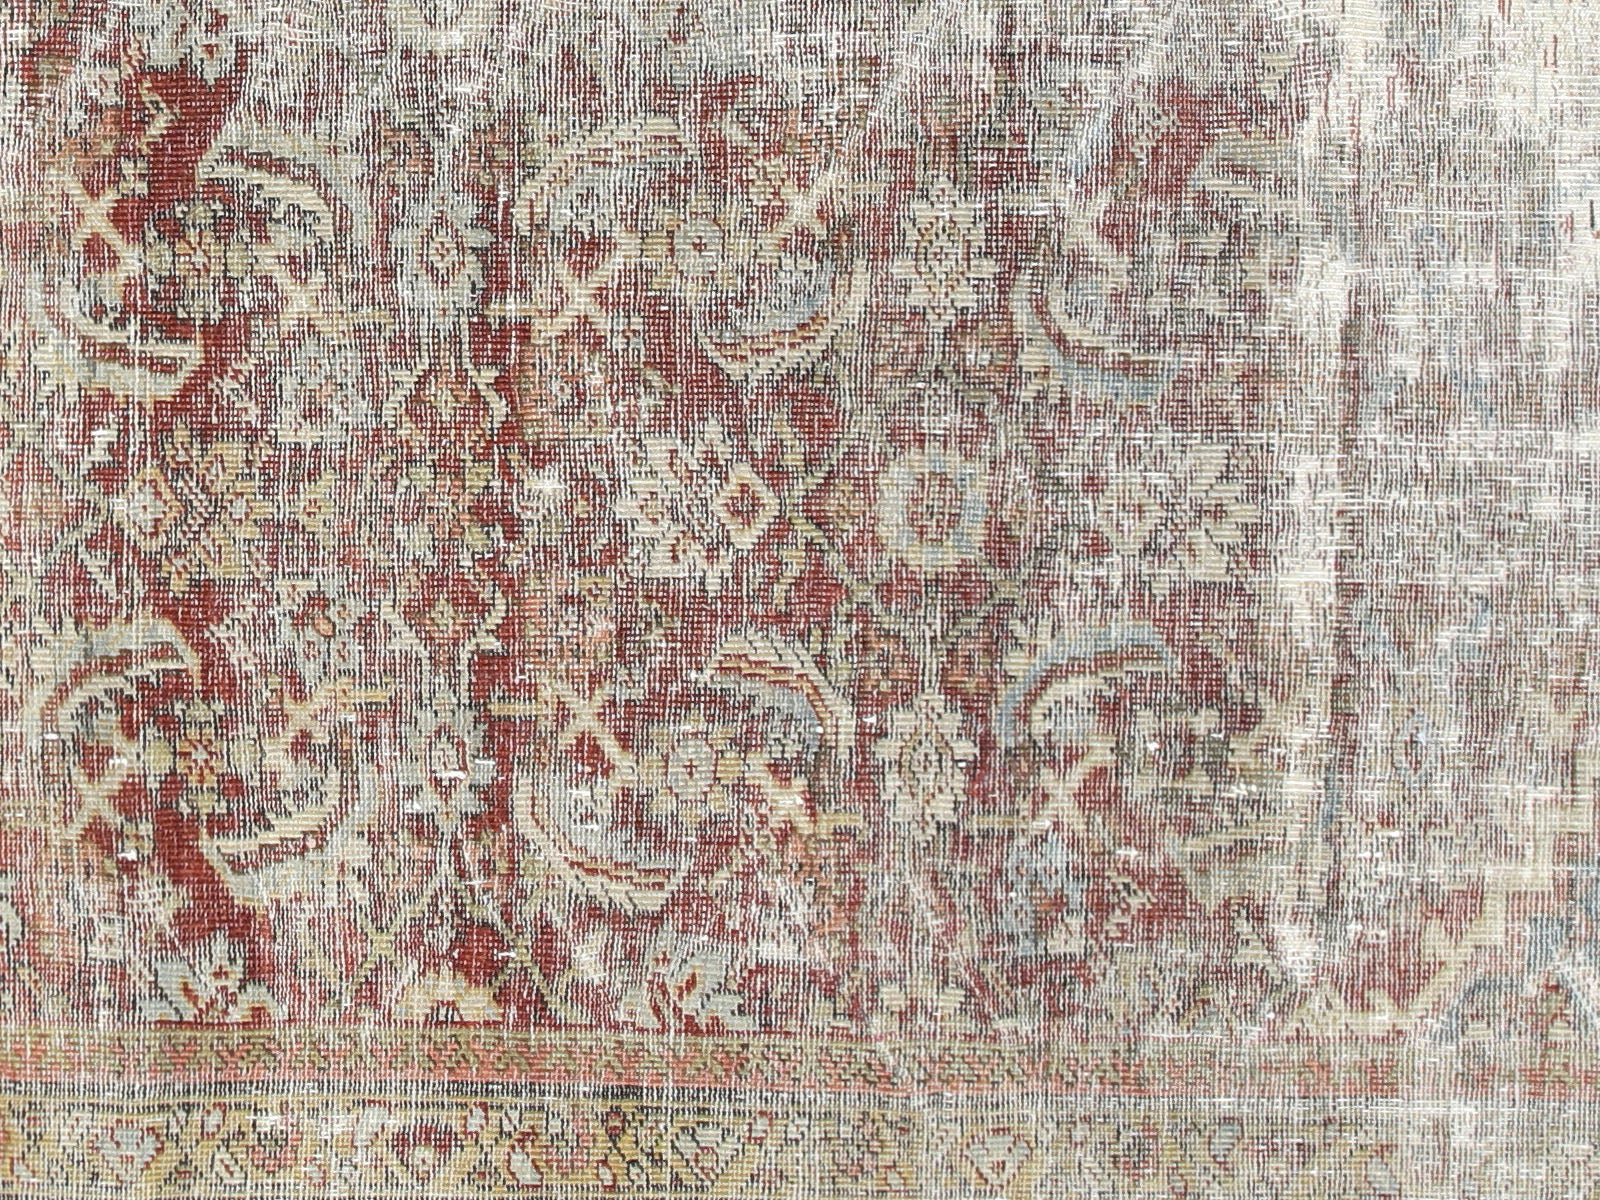 Antique Persian Mahal Rug - 8'4" x 11'6"